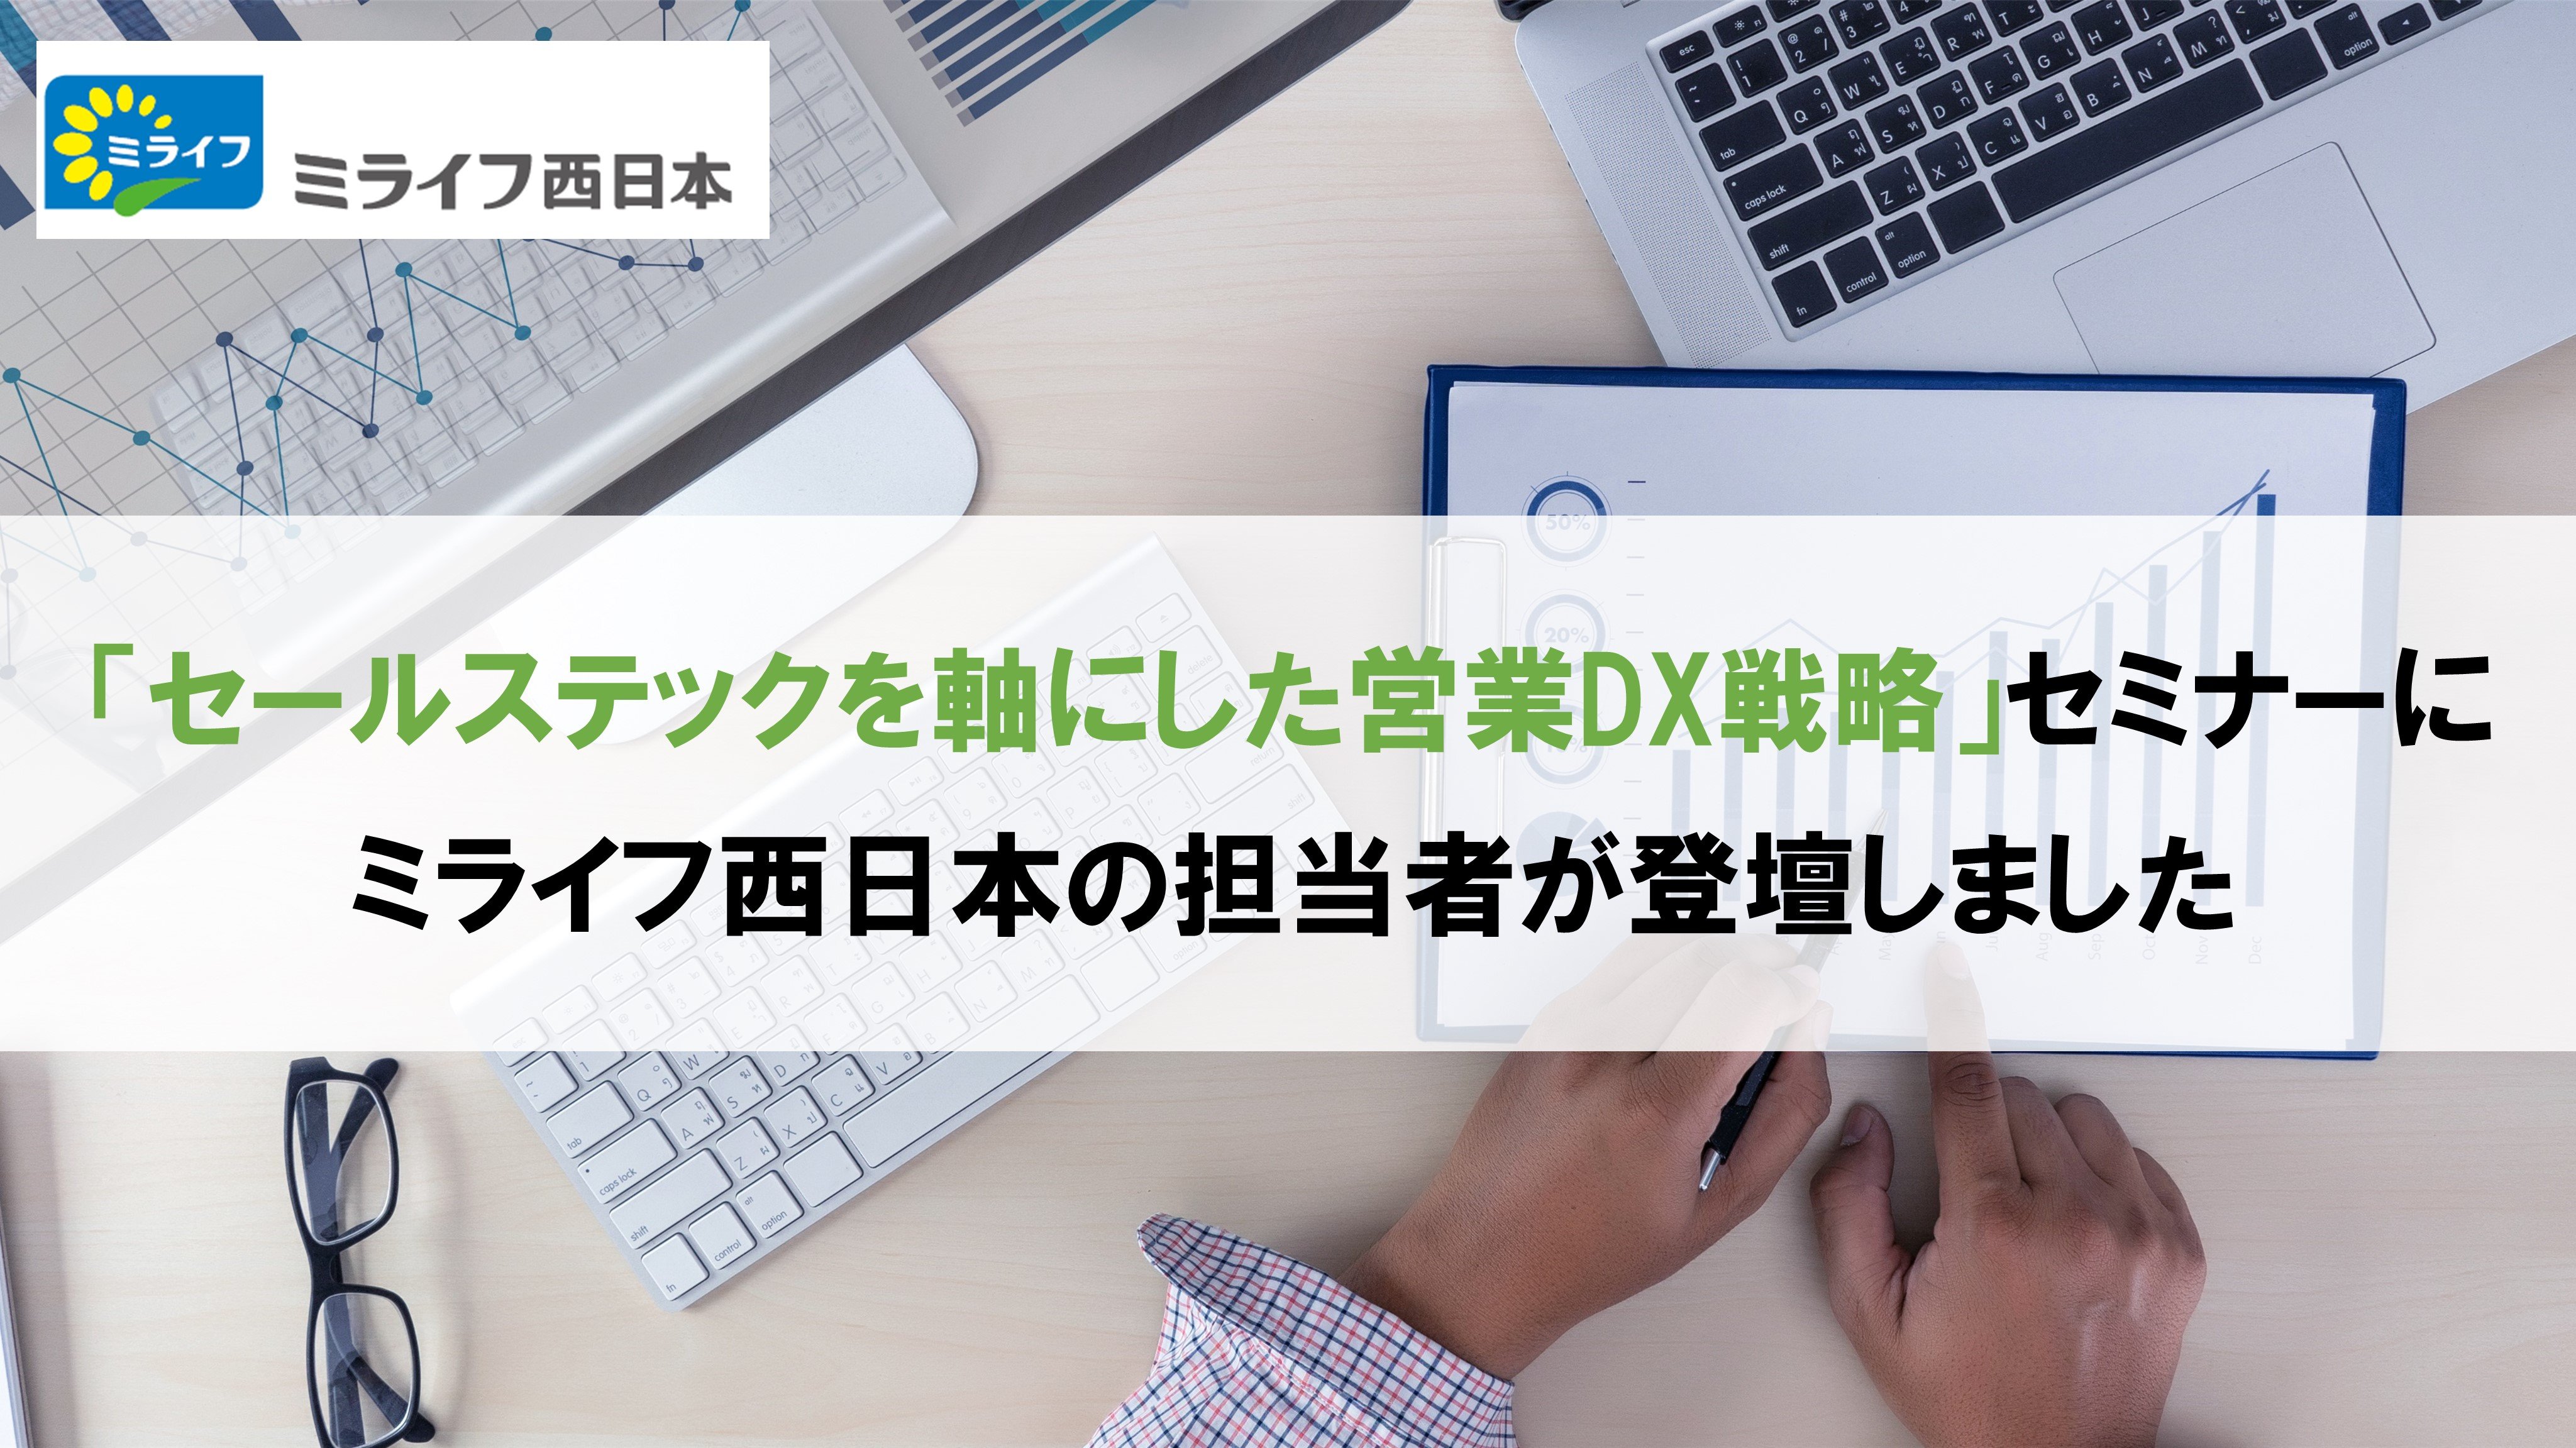 「セールステックを軸にした営業DX戦略」セミナーにミライフ西日本が登壇